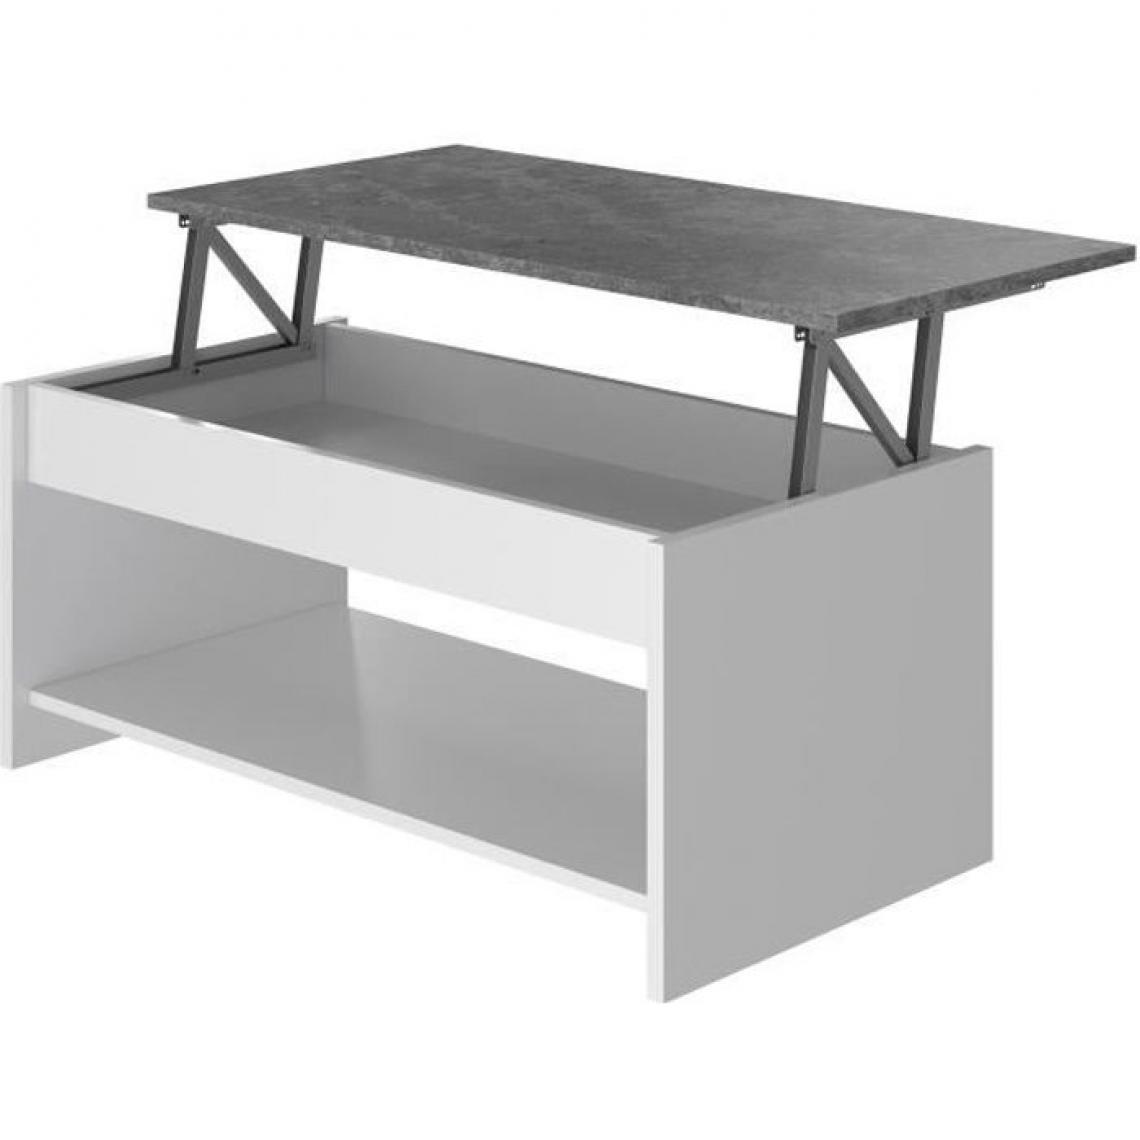 Cstore - HAPPY - table basse relevable - blanc et gris - l 100 cm - Tables basses